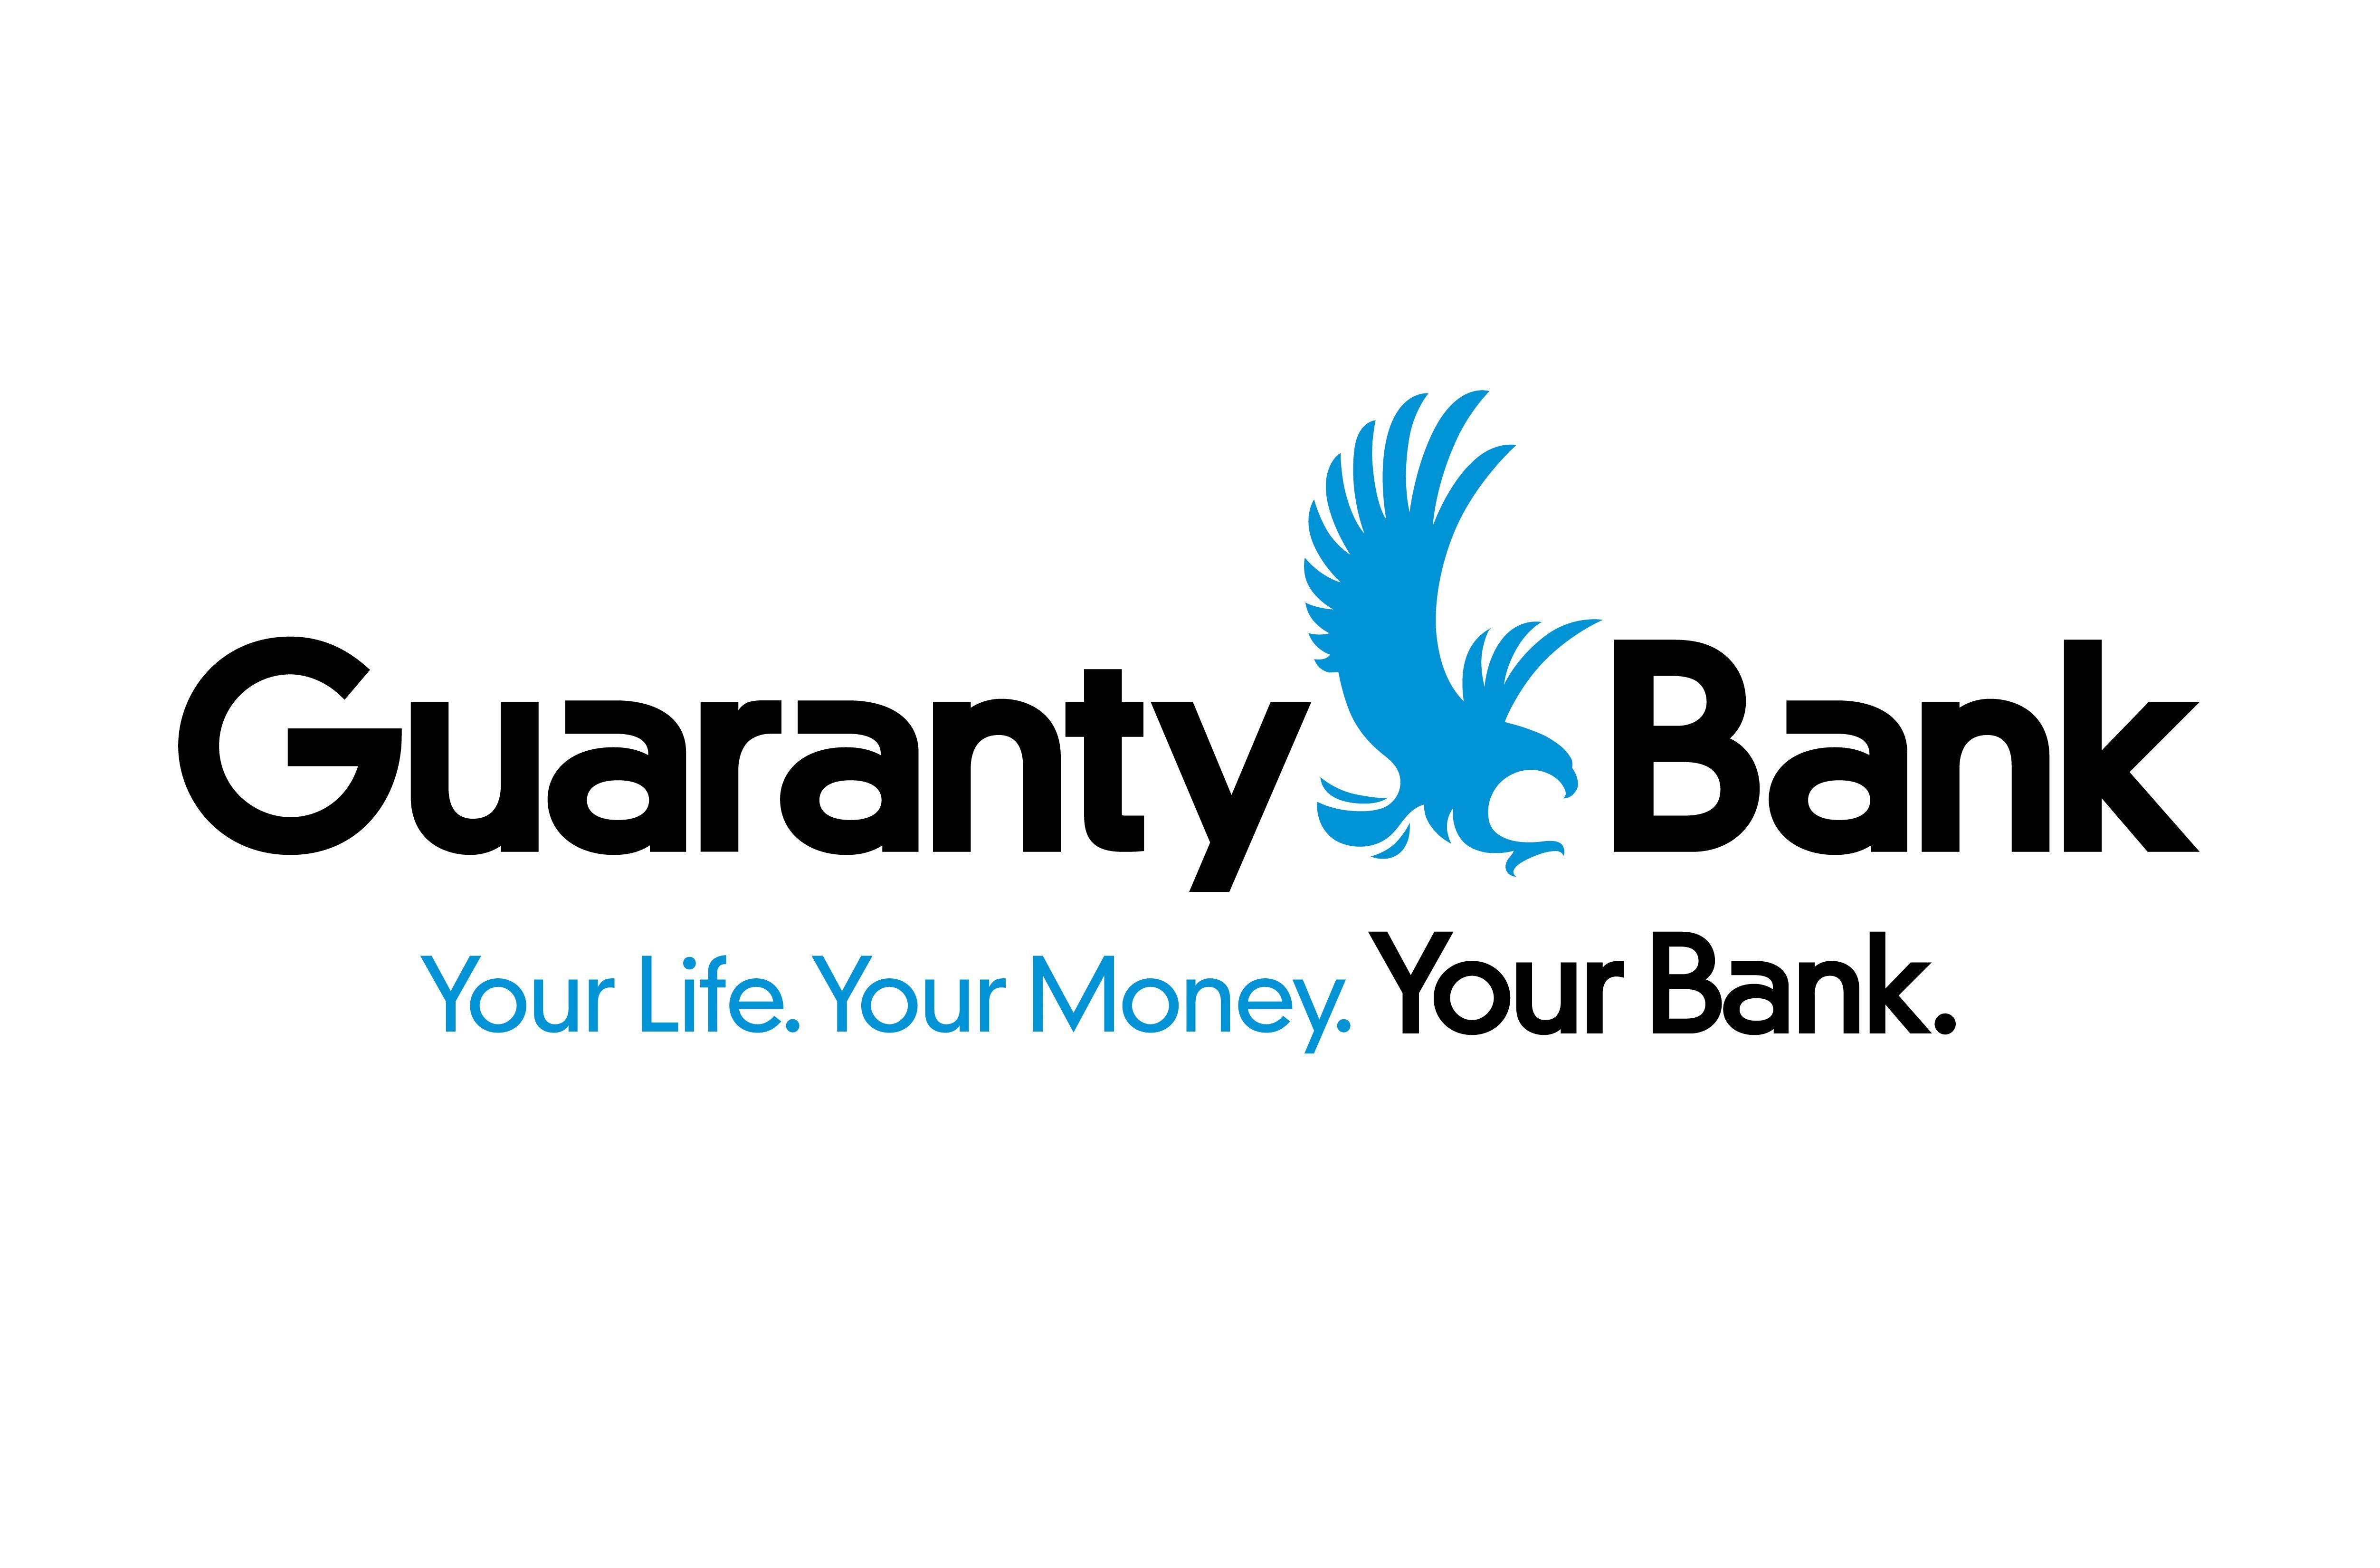 Www.guarantybank.com Logo - Guaranty Bank Now Accepting Customer Deposits in Joplin | Guaranty ...